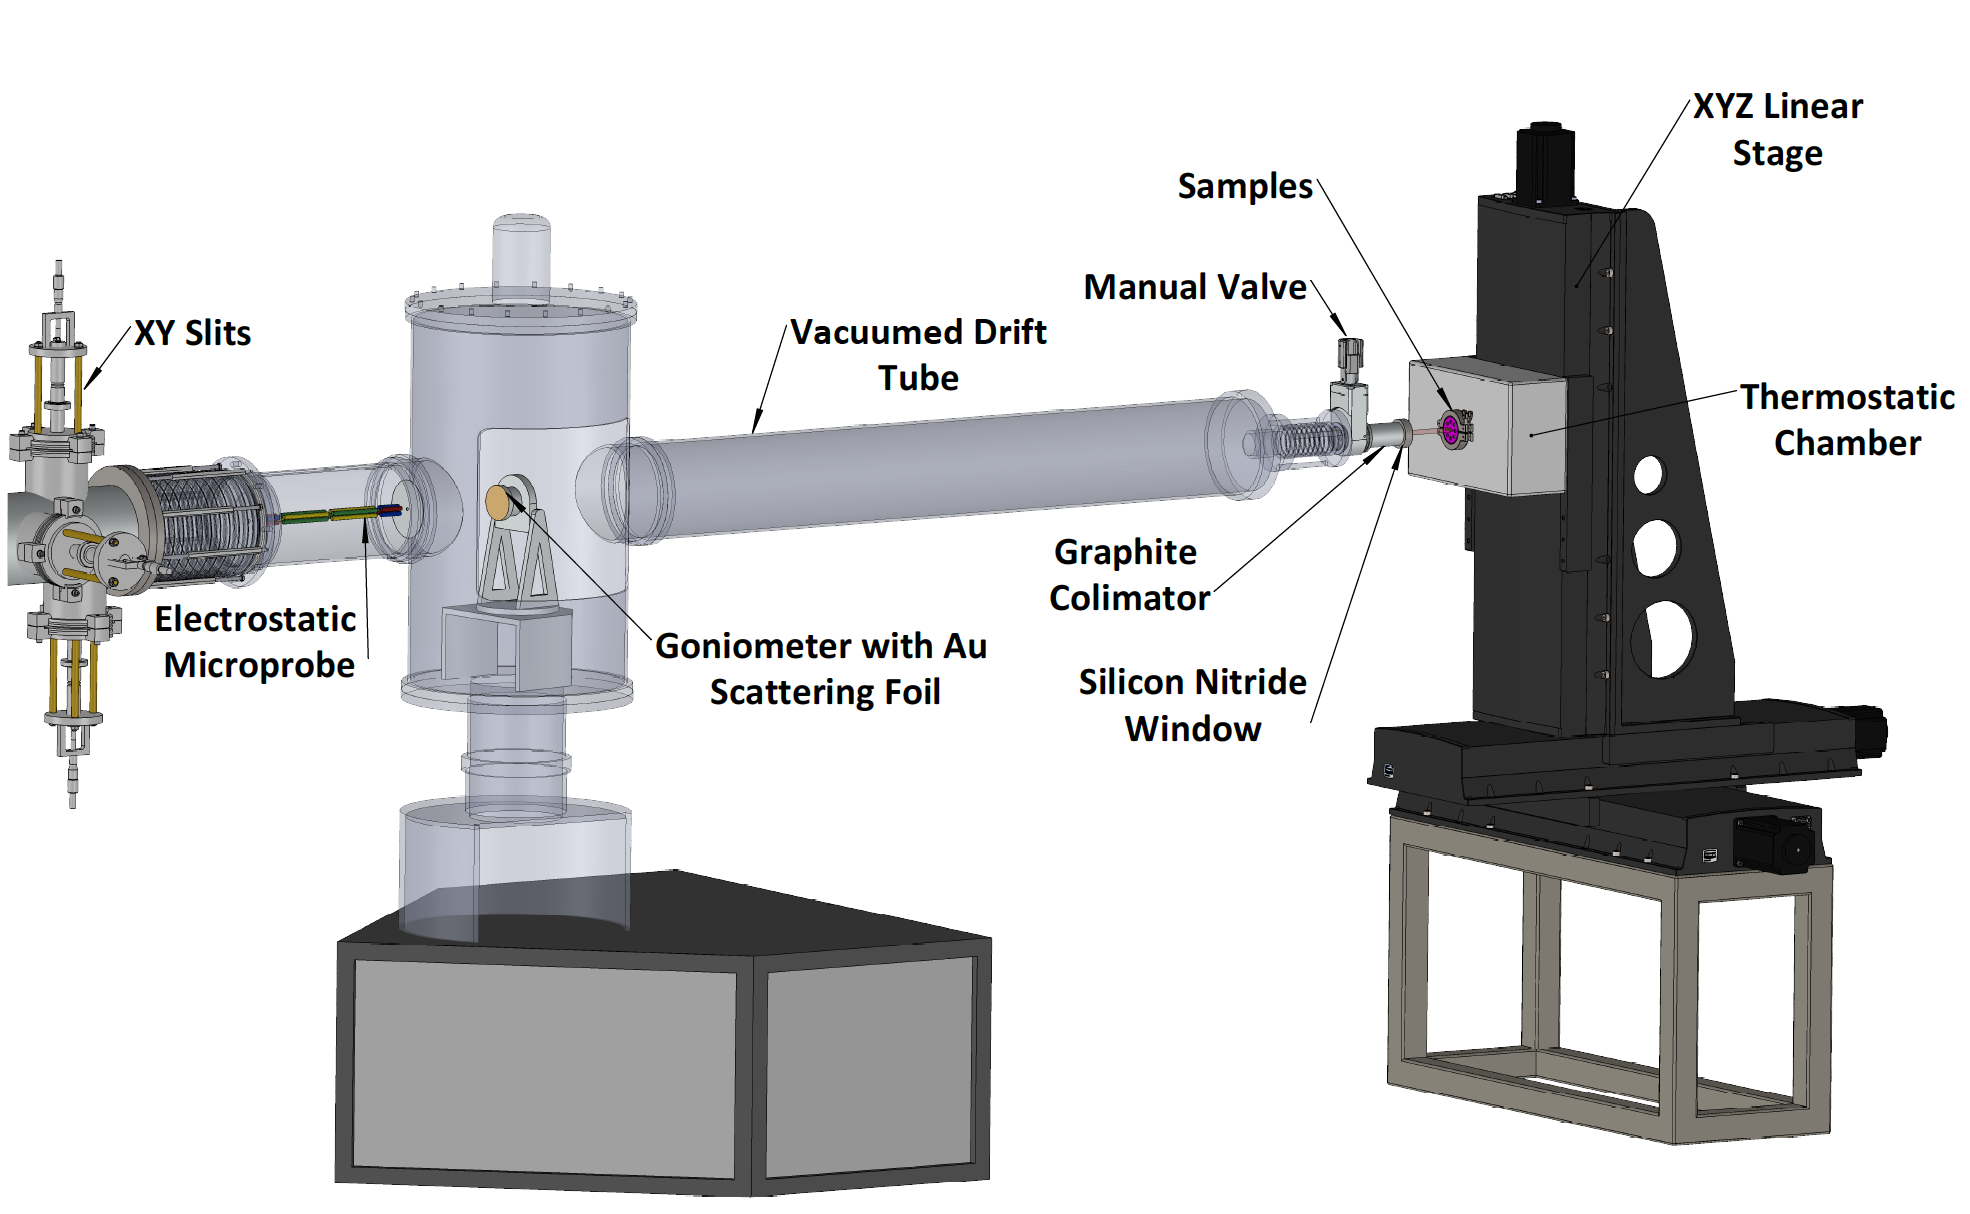 3D schematics of the external beam setup